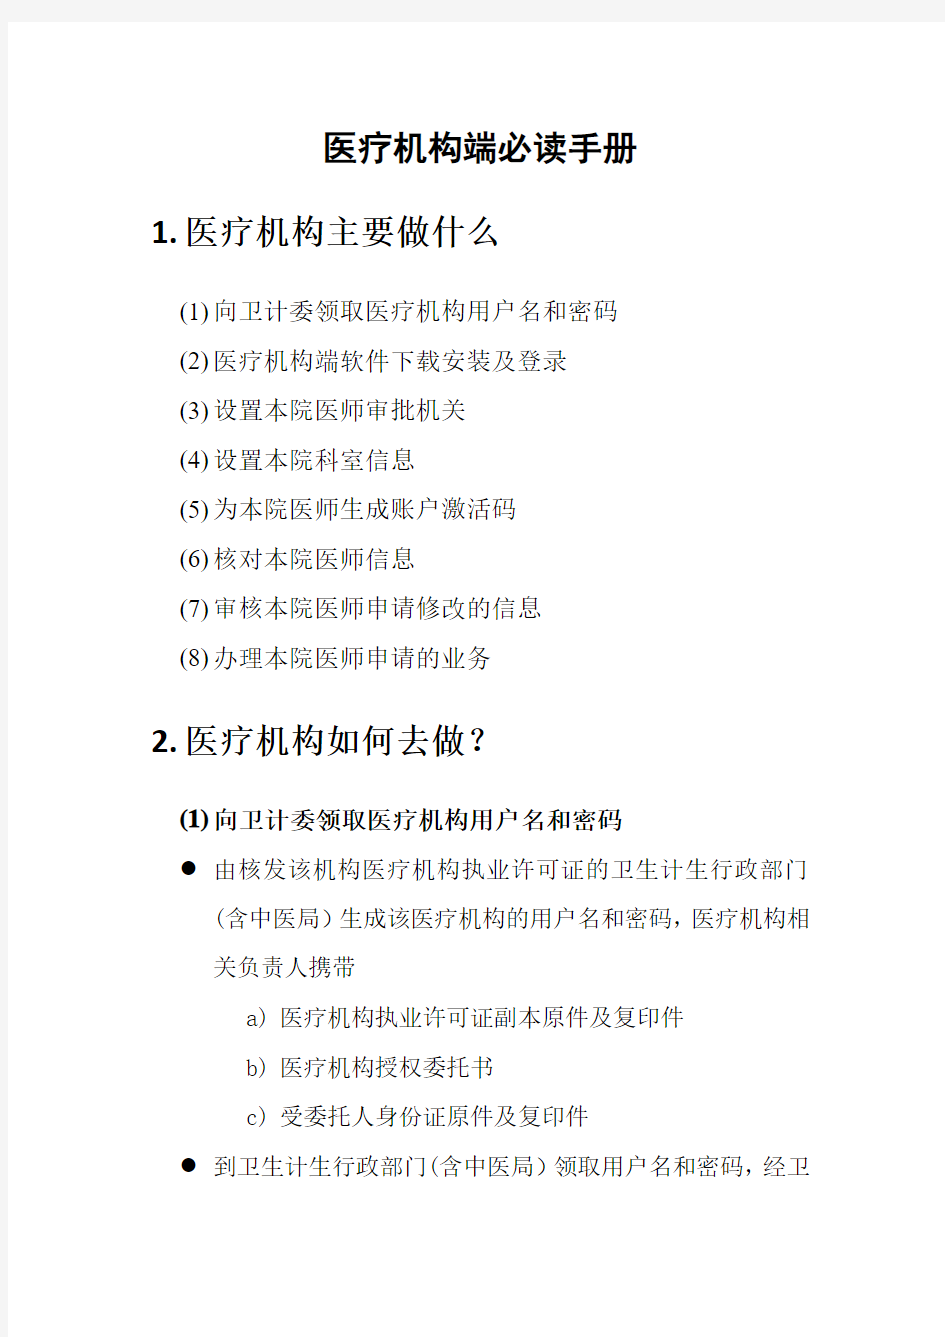 北京医师电子化注册系统医疗机构必读手册V1.02